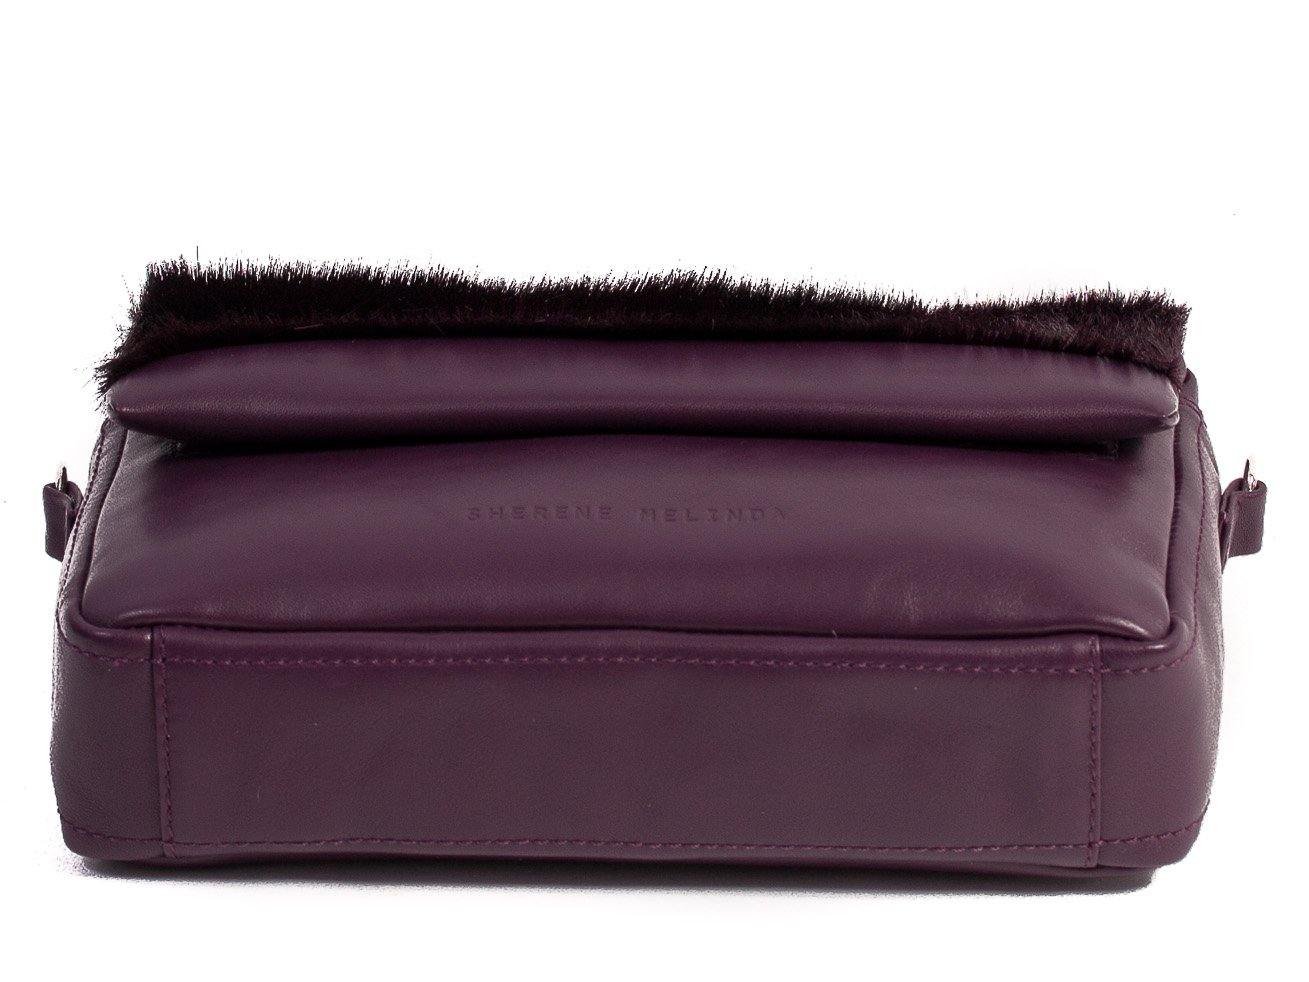 sherene melinda springbok hair-on-hide plum leather shoulder bag Stripe bottom